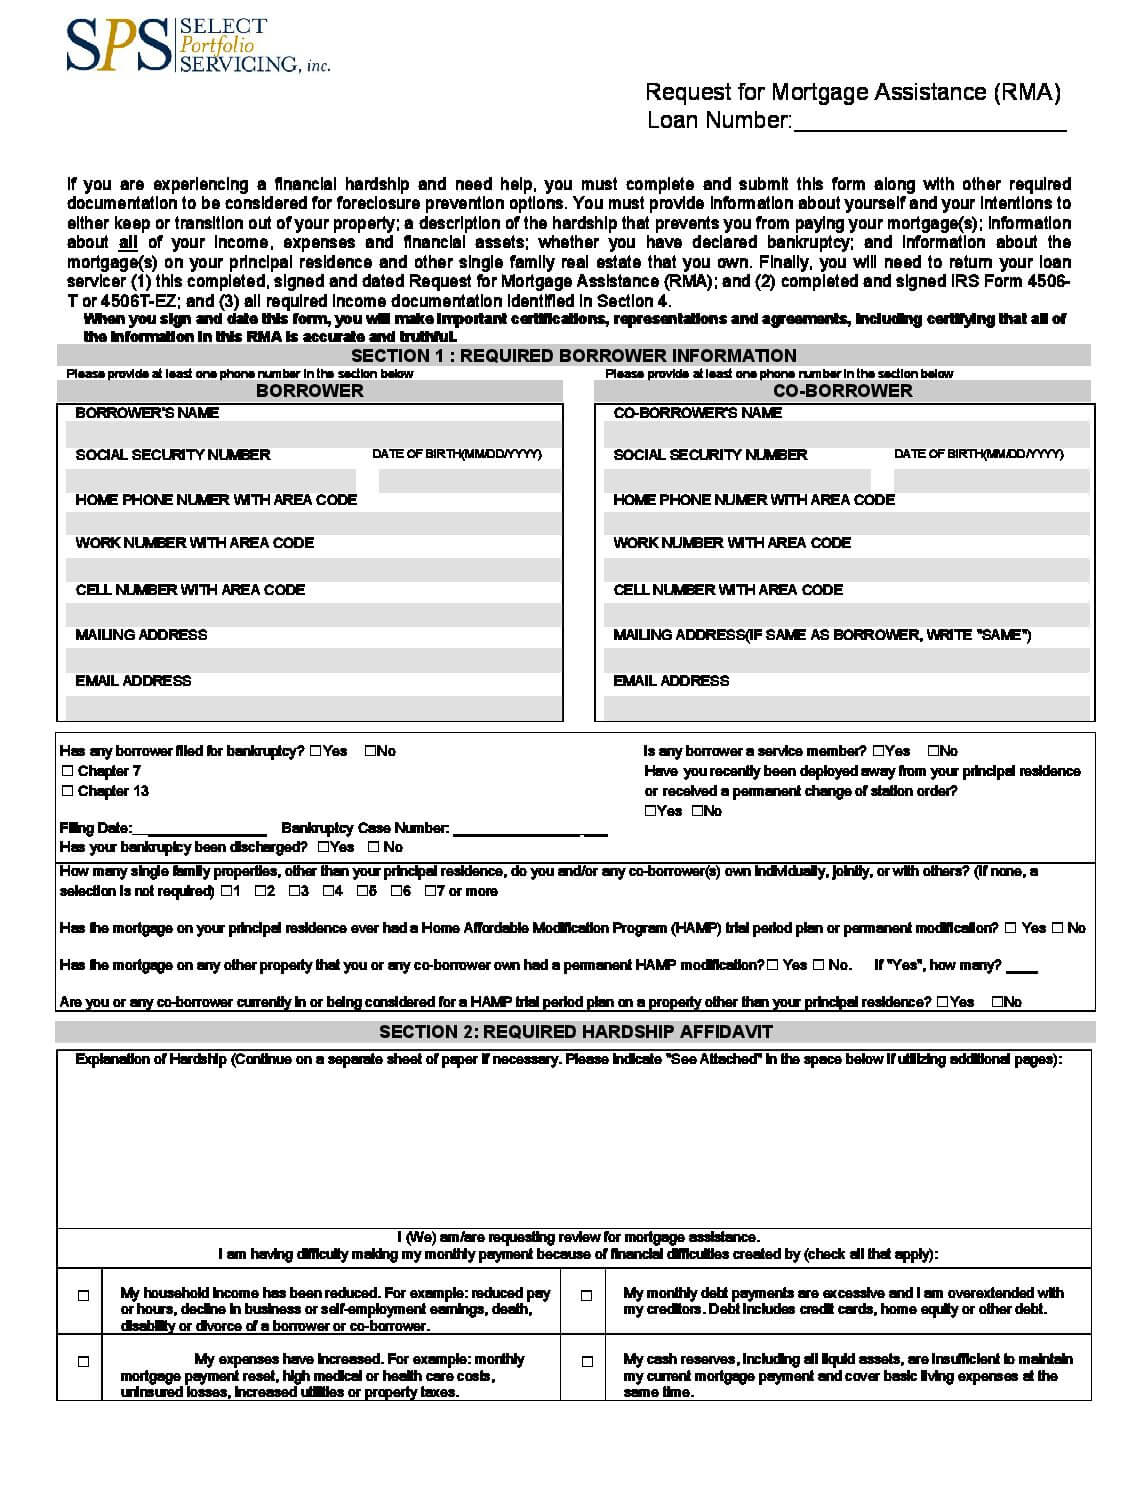 Ocwen RMA Loan Modification Package Forms